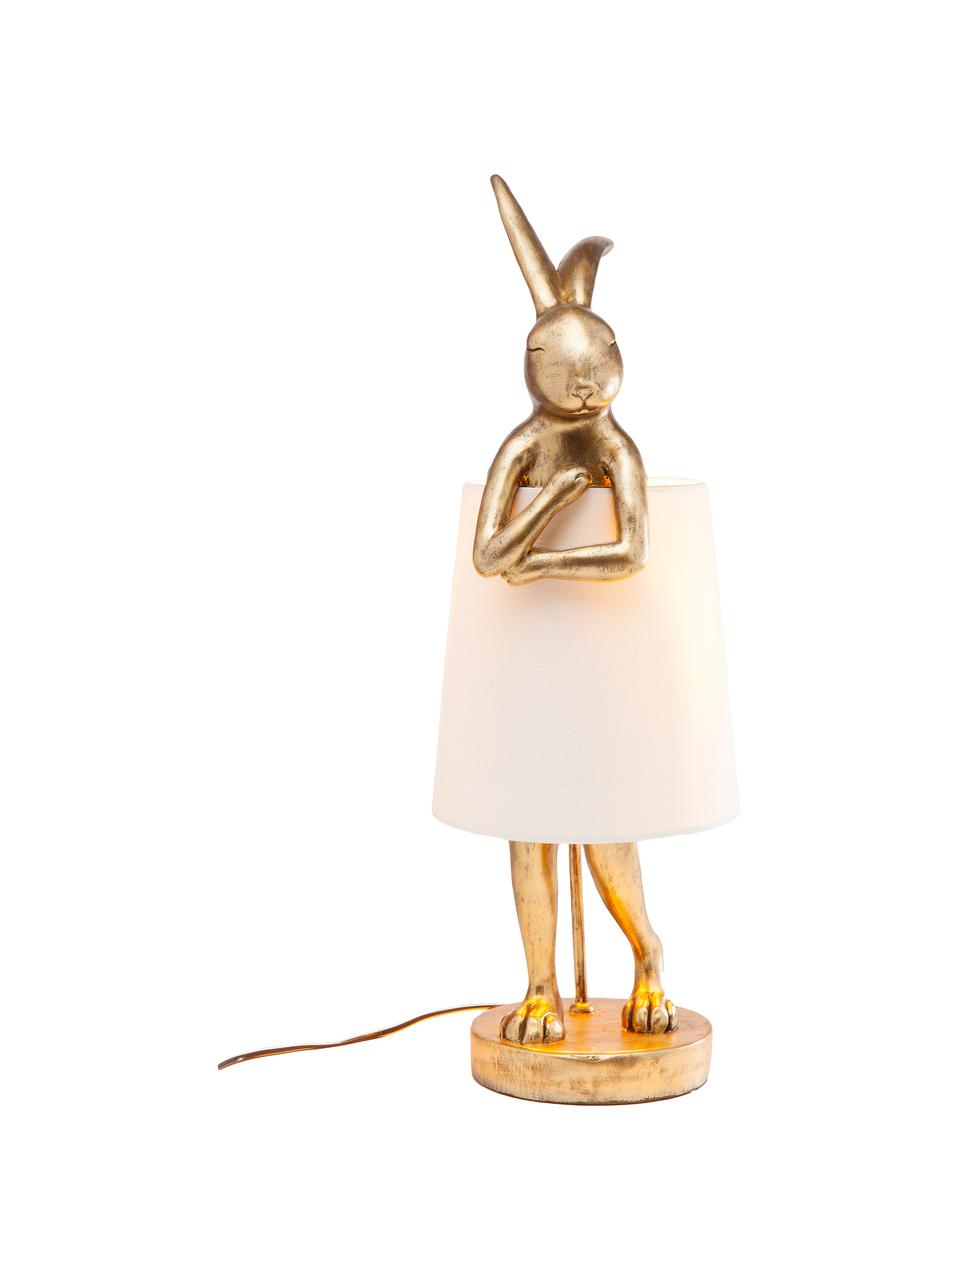 Große Design Tischlampe Rabbit, Lampenschirm: Leinen, Lampenfuß: Polyresin, Stange: Stahl, pulverbeschichtet, Weiß, Goldfarben, Ø 23 x H 68 cm